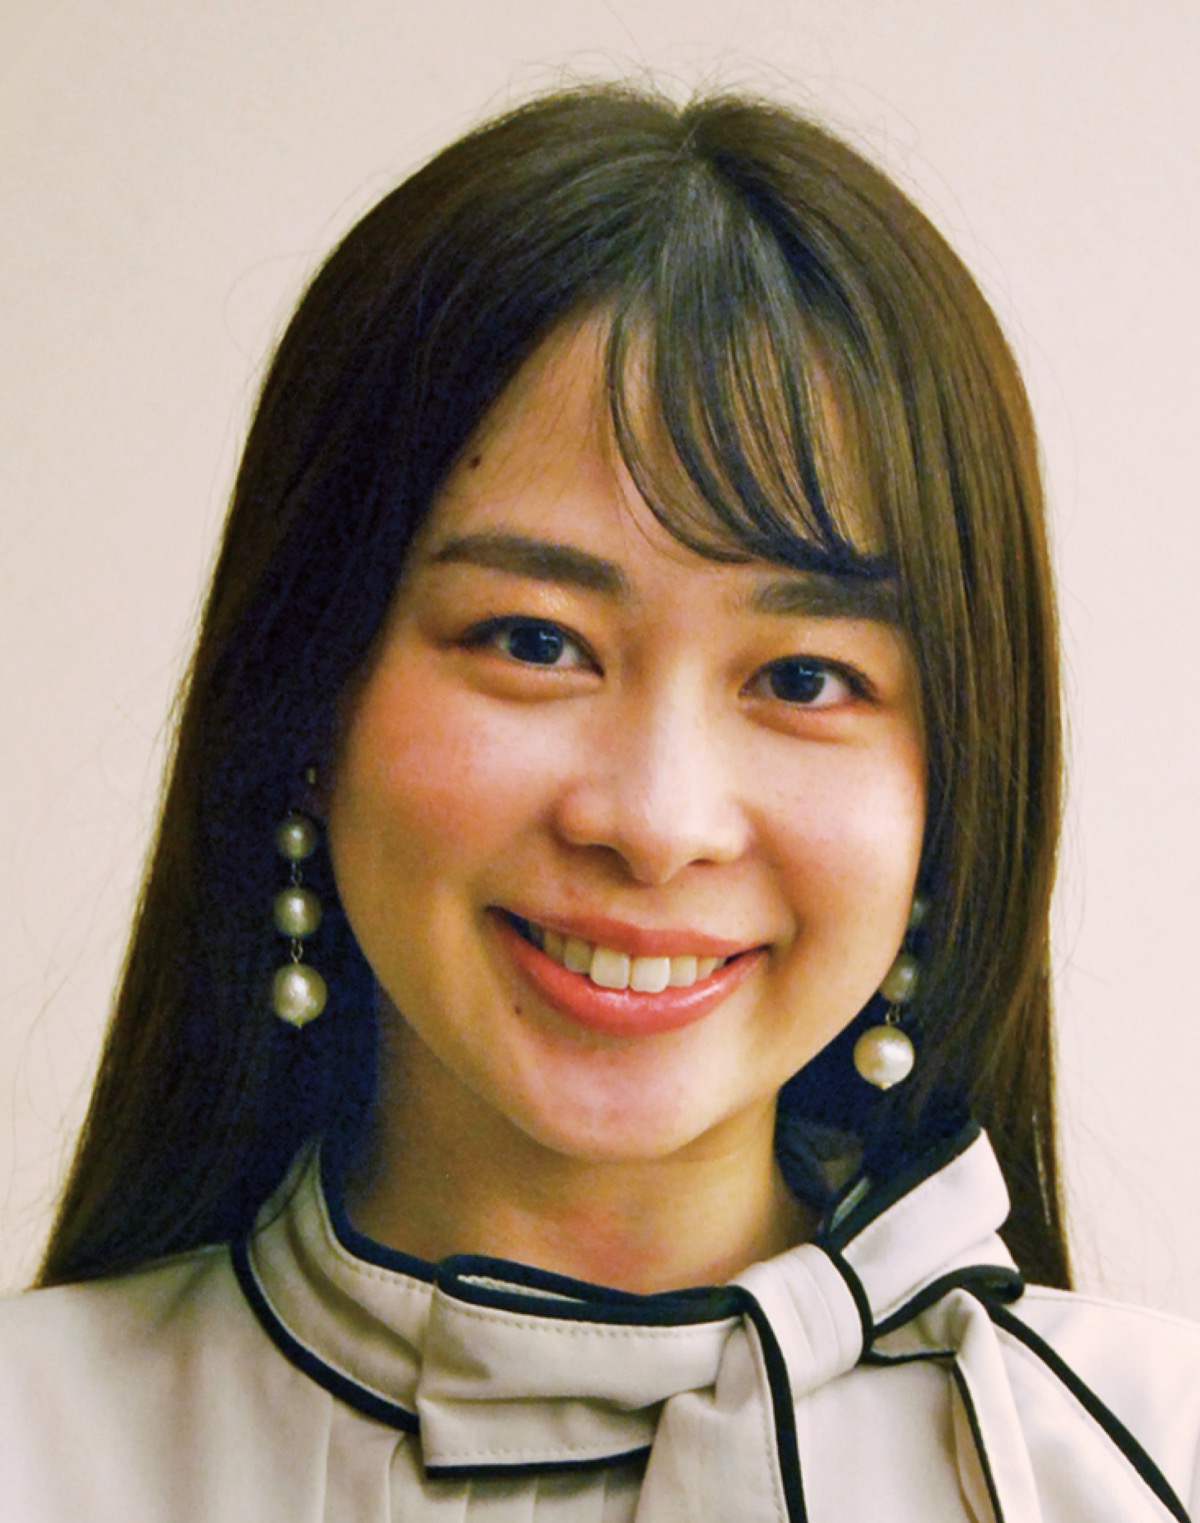 永瀬 愛美さん Beauty Japan19神奈川大会でグランプリを受賞 大会の運営を行う 港北区 タウンニュース